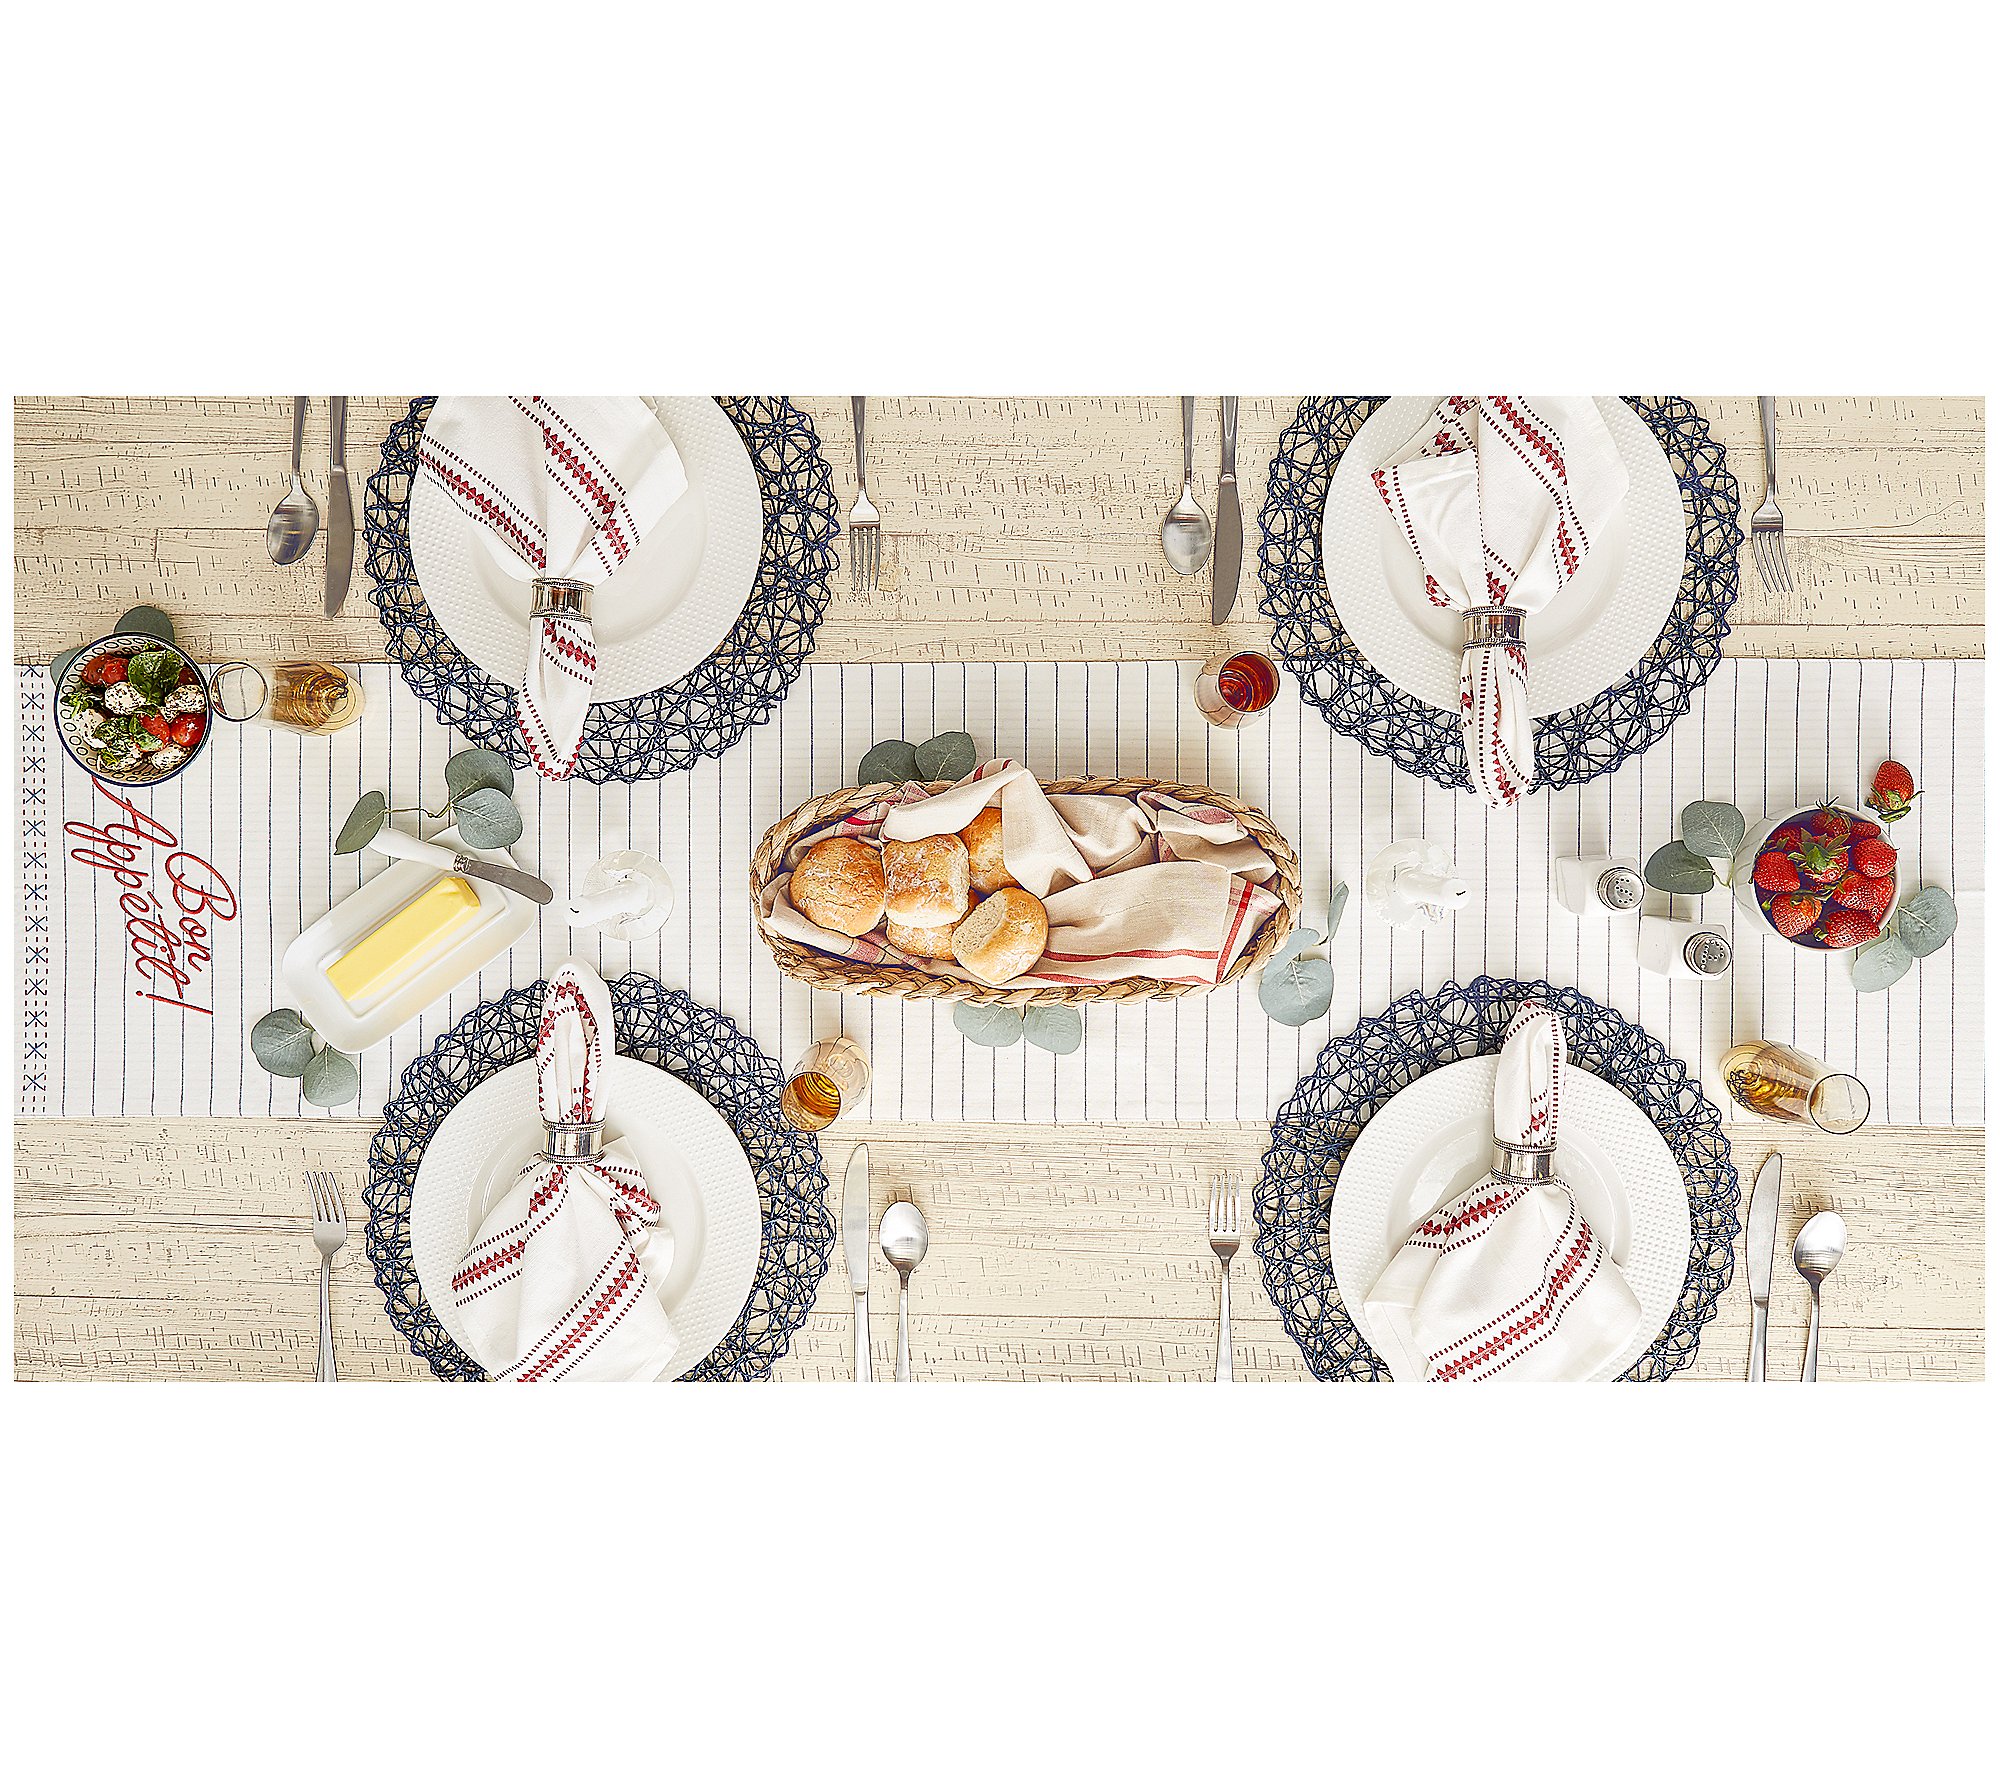 Design Imports Bon Appetit Embellished Table Runner 14